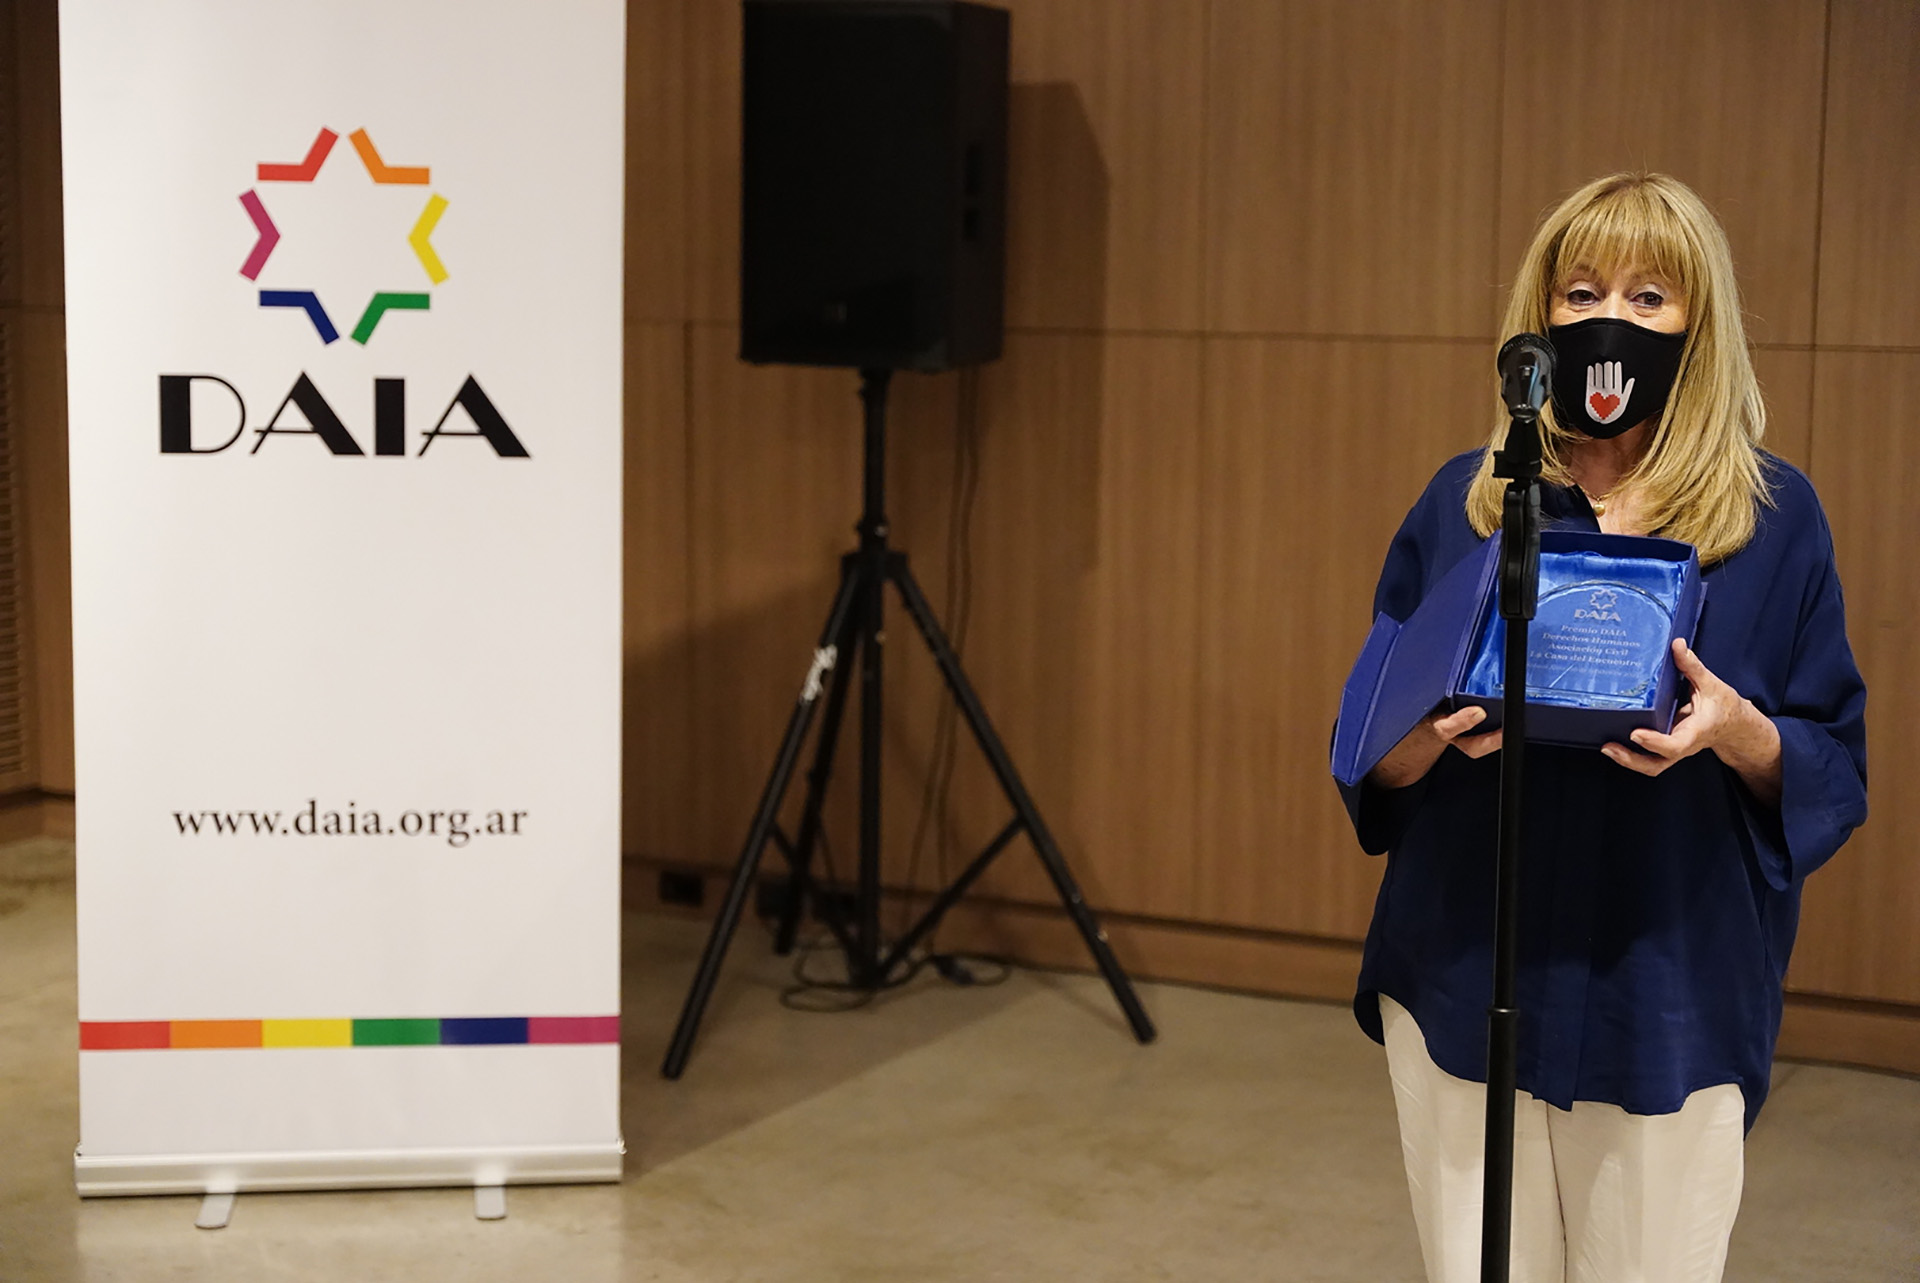 El Premio DAIA a los Derechos Humanos fue para la Asociación Civil "La Casa del Encuentro" y fue recibido por su presidenta, Ada Beatriz Rico